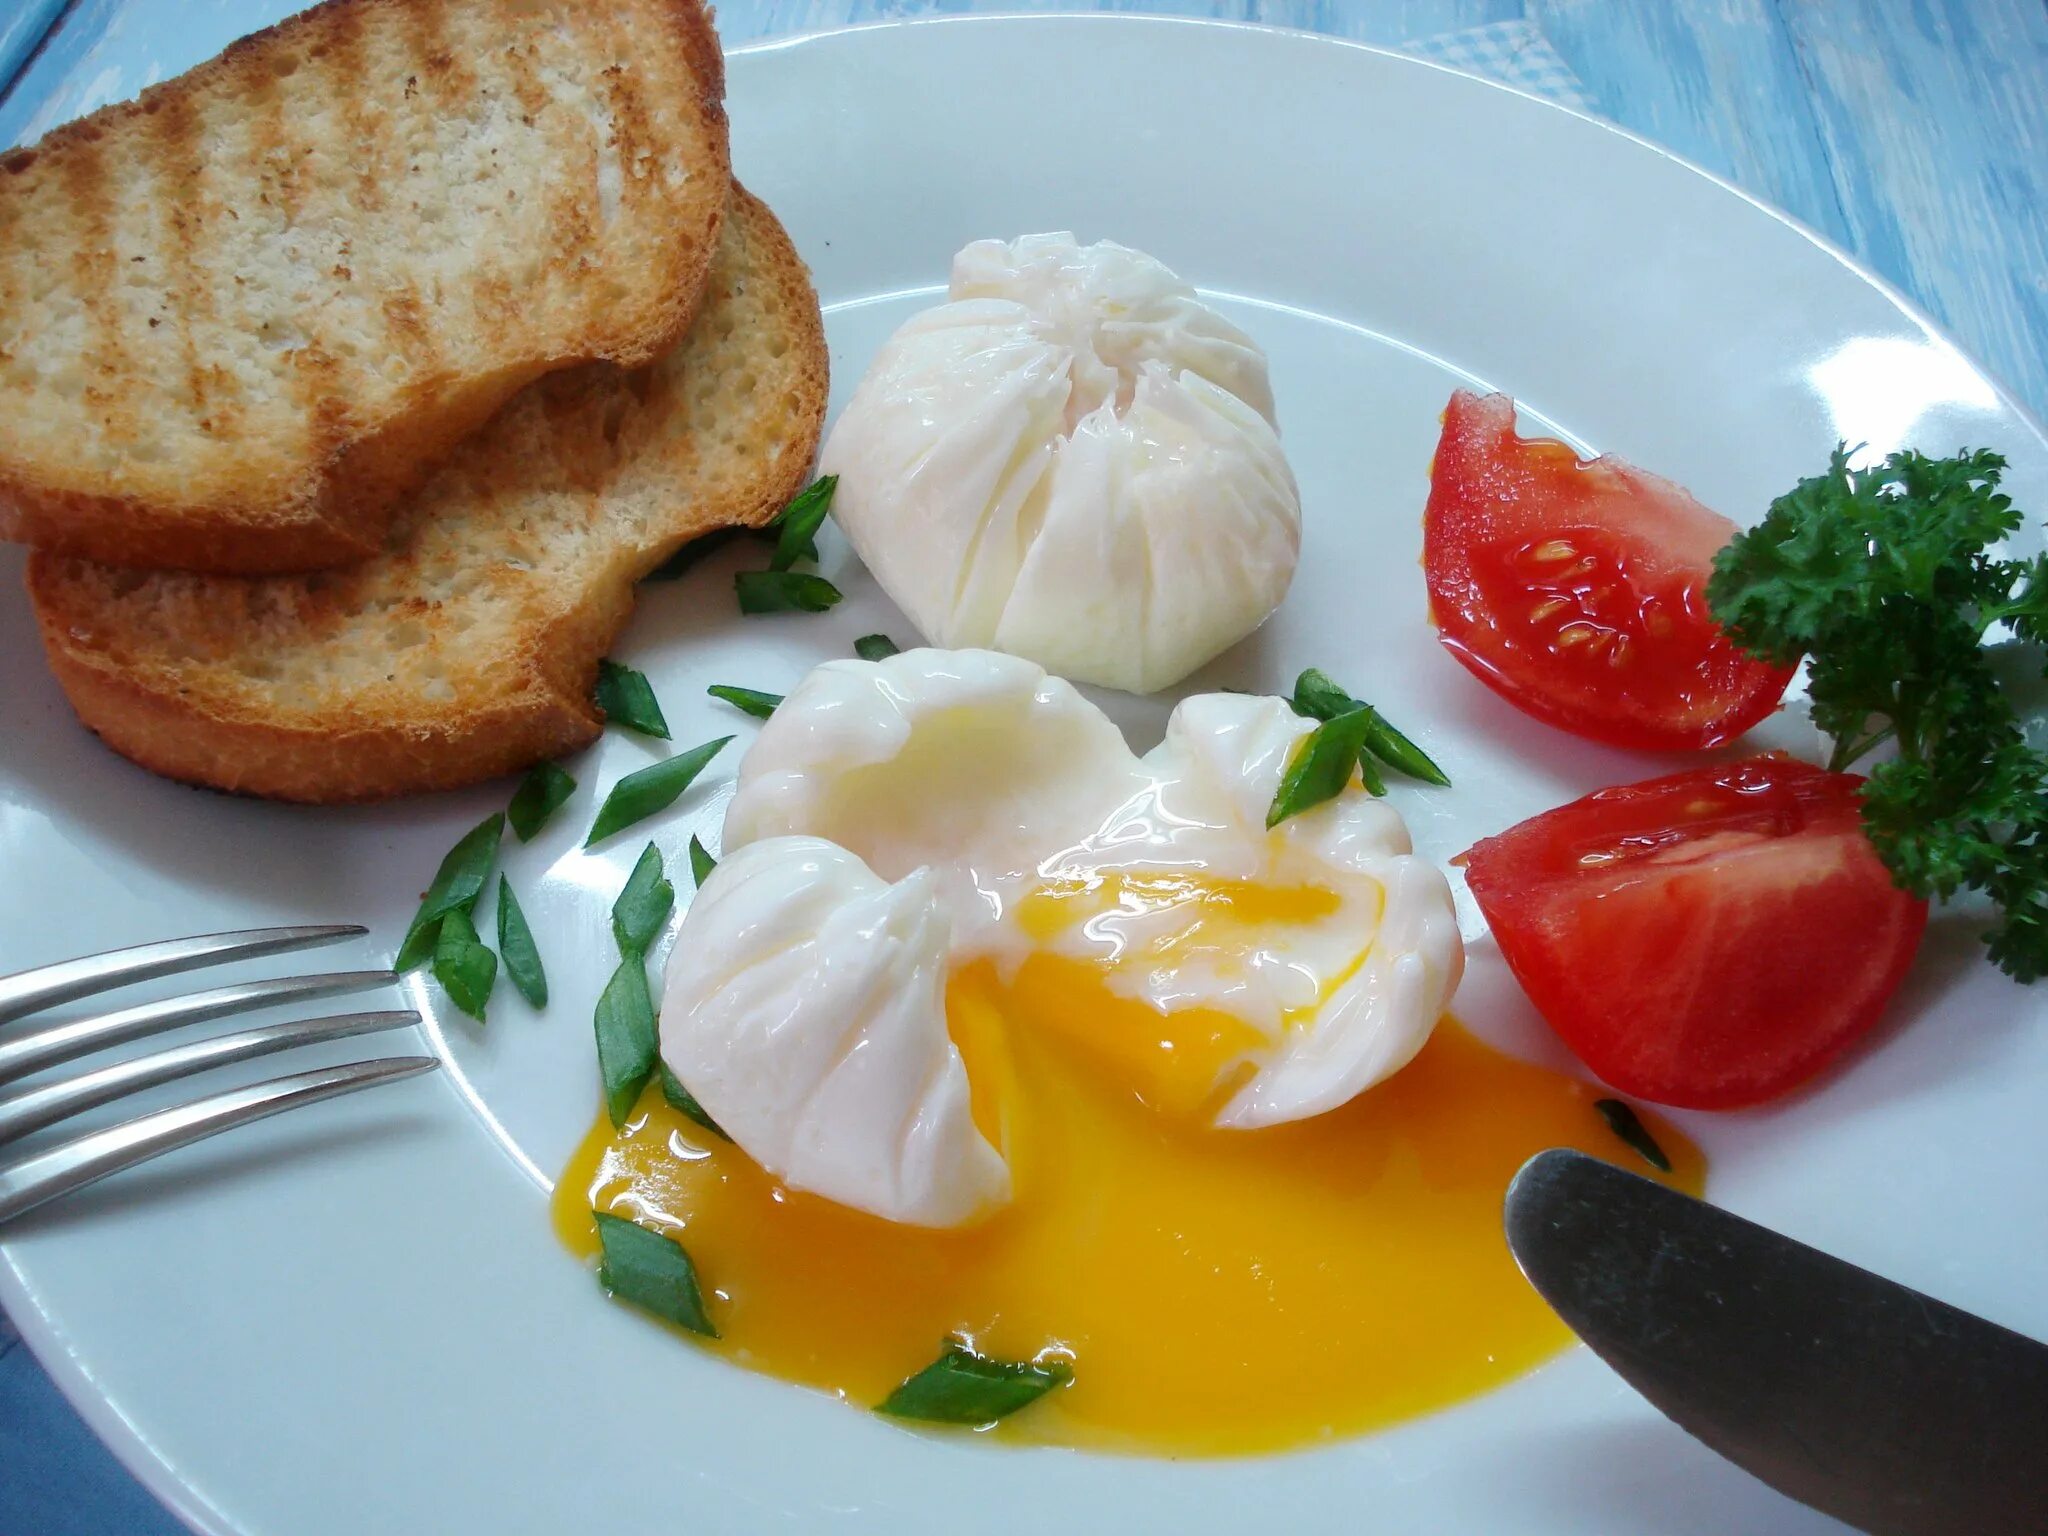 Яйцо пашот в мешочке. Яйца пашот всмятку. Завтрак с яйцом пашот. Яйцо пашот Эстетика. Яйцо пашот в домашних условиях видео